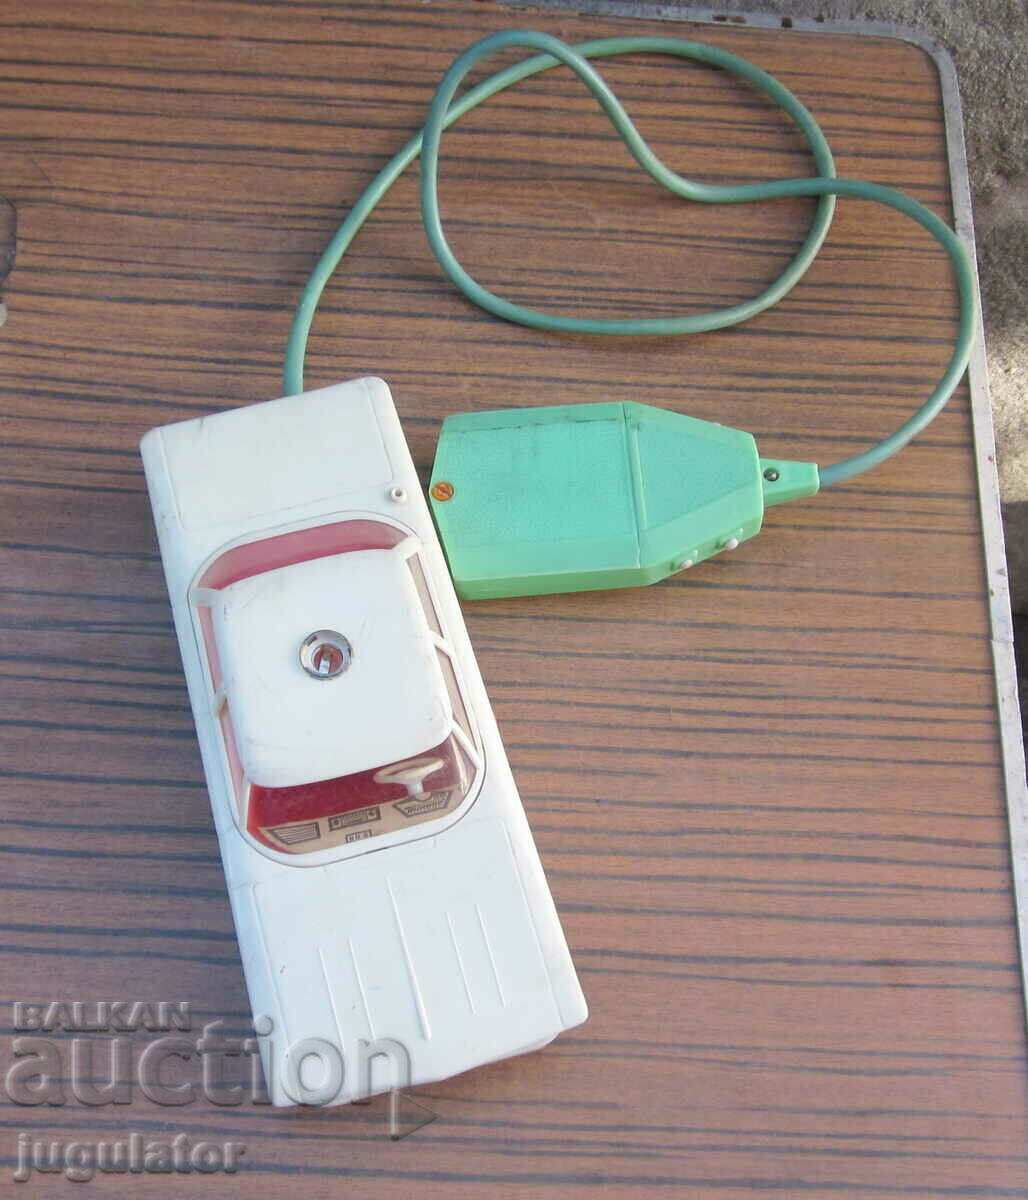 troler ambulanta vechi de jucarie din plastic cu baterii de la soca